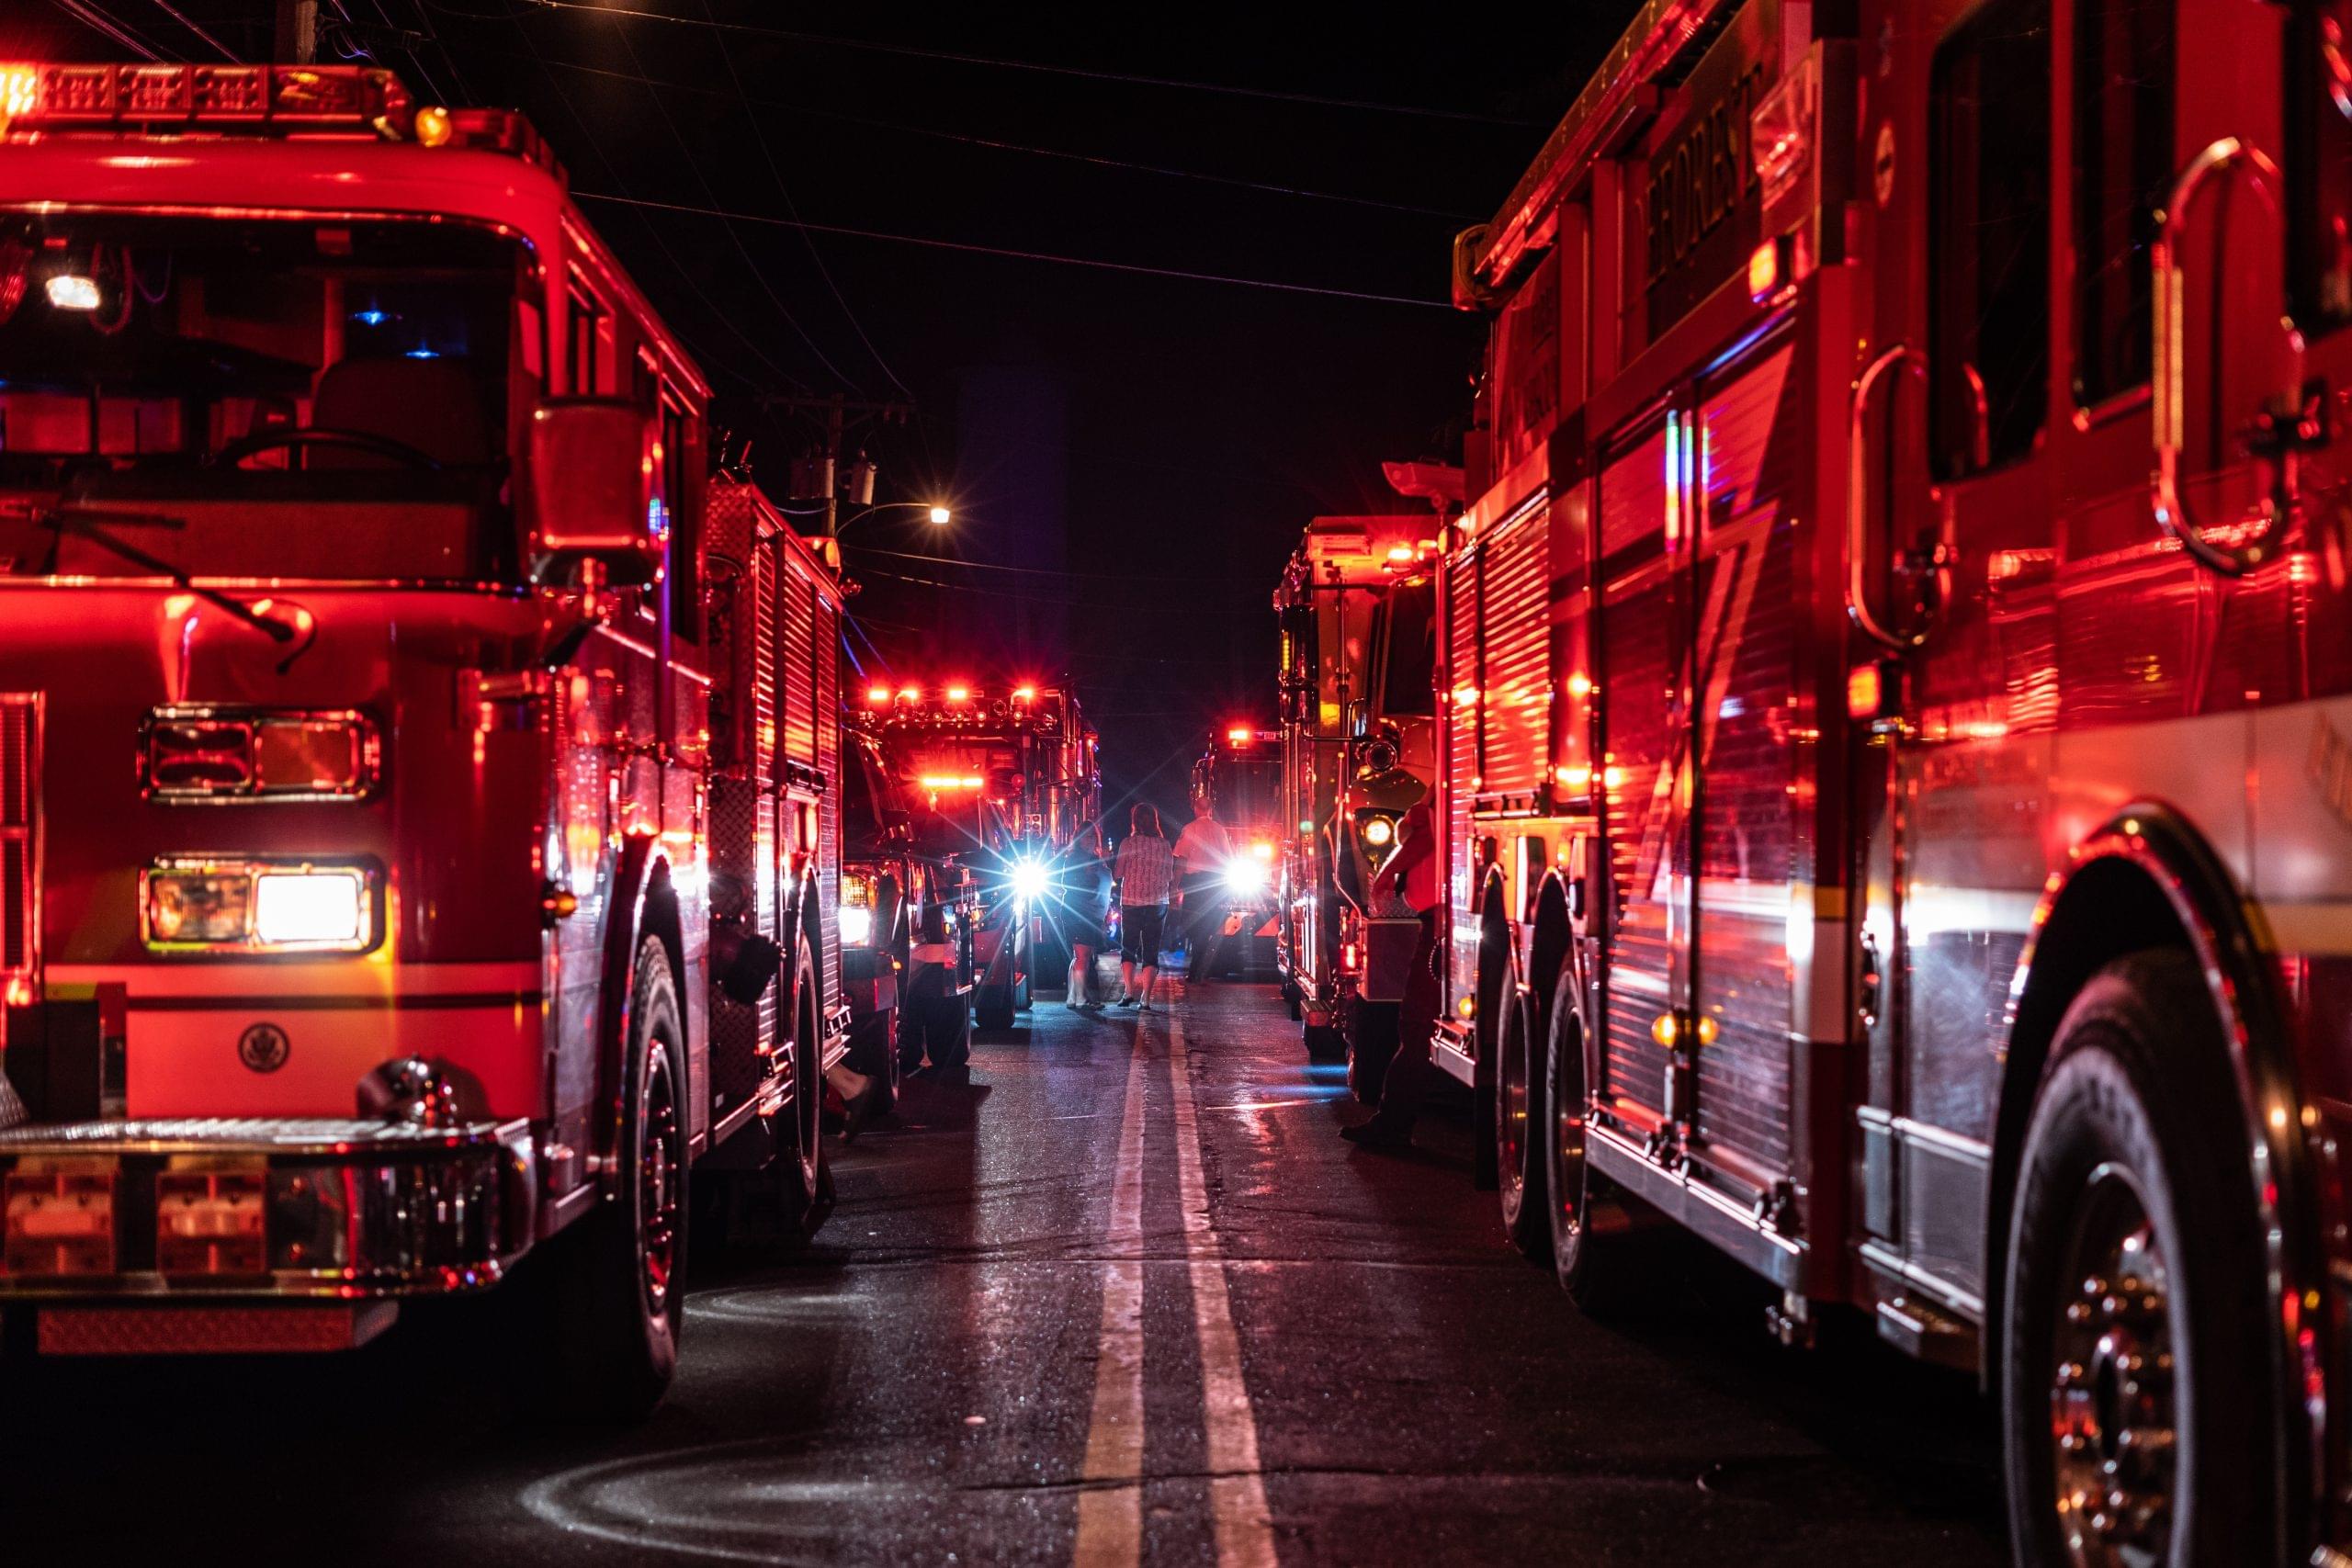 Firetrucks lining a street at night